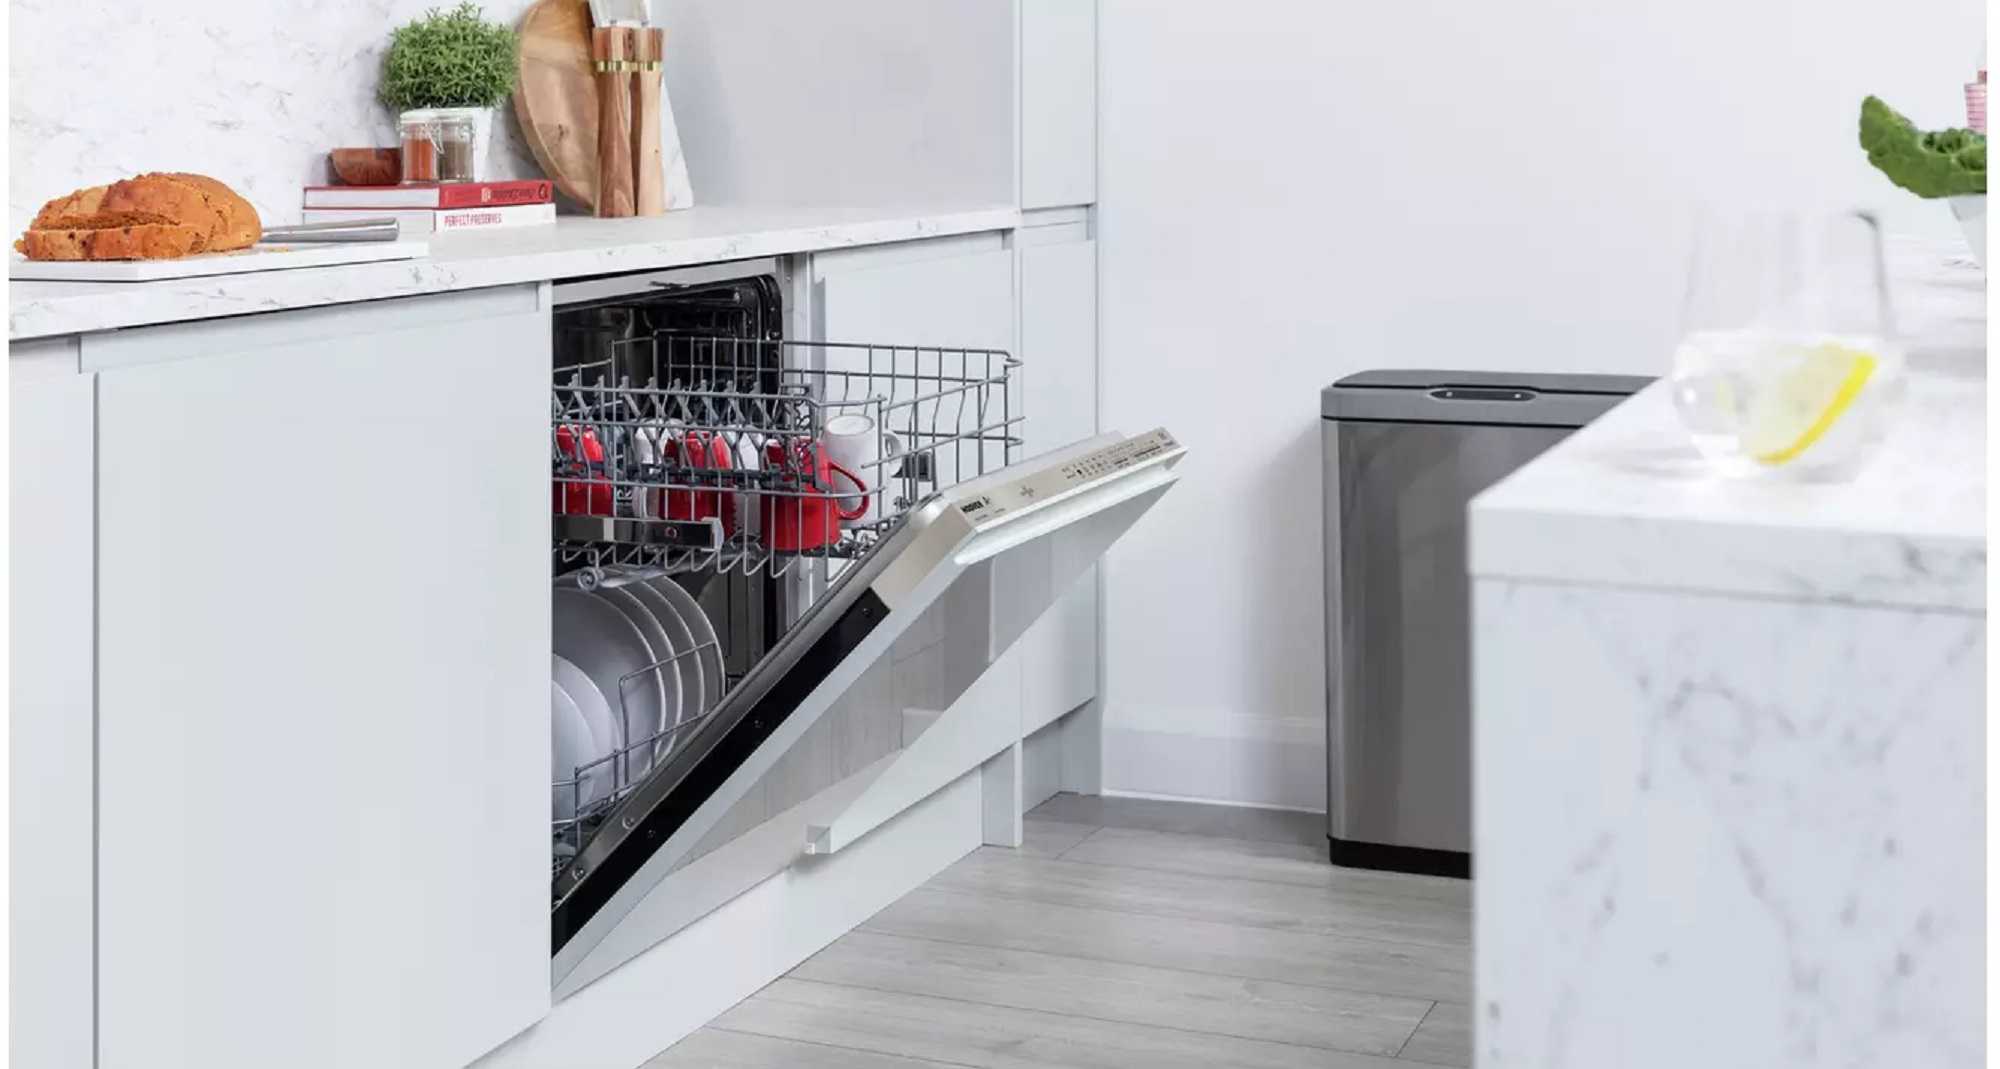 Топ встроенных посудомоечных машин 60 см. Топ посудомоечных машин 2022. Встраиваемая посудомоечная машина Miele g7250 SCVI. Лучшие посудомоечные машины 2022. Miele g 5072.